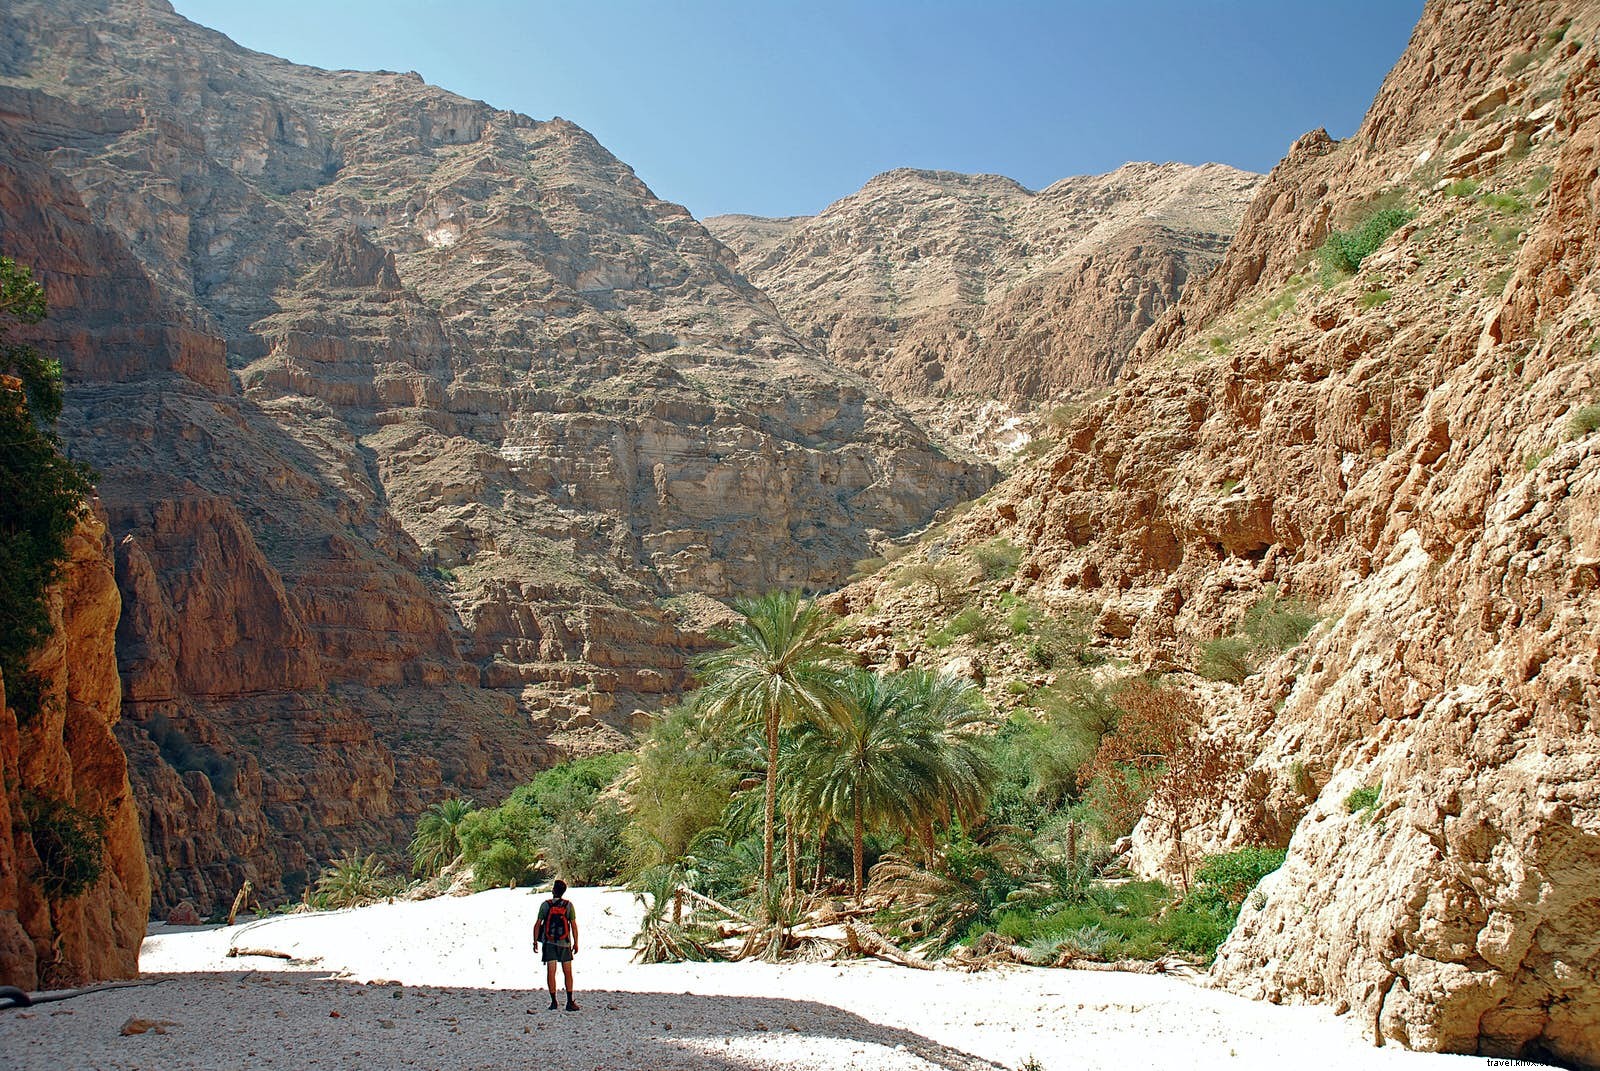 Wadi meravigliosi:visitare il  deserto verticale  dell Oman 